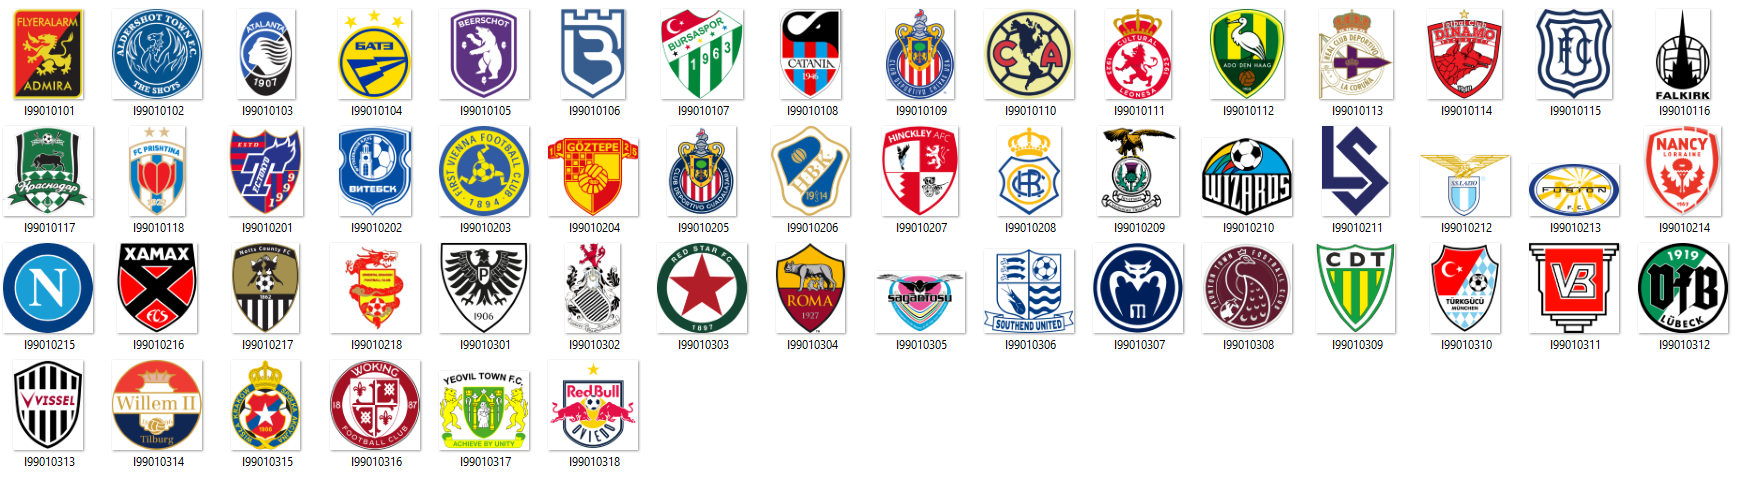 FIFA 23 Clubs – FIFPlay